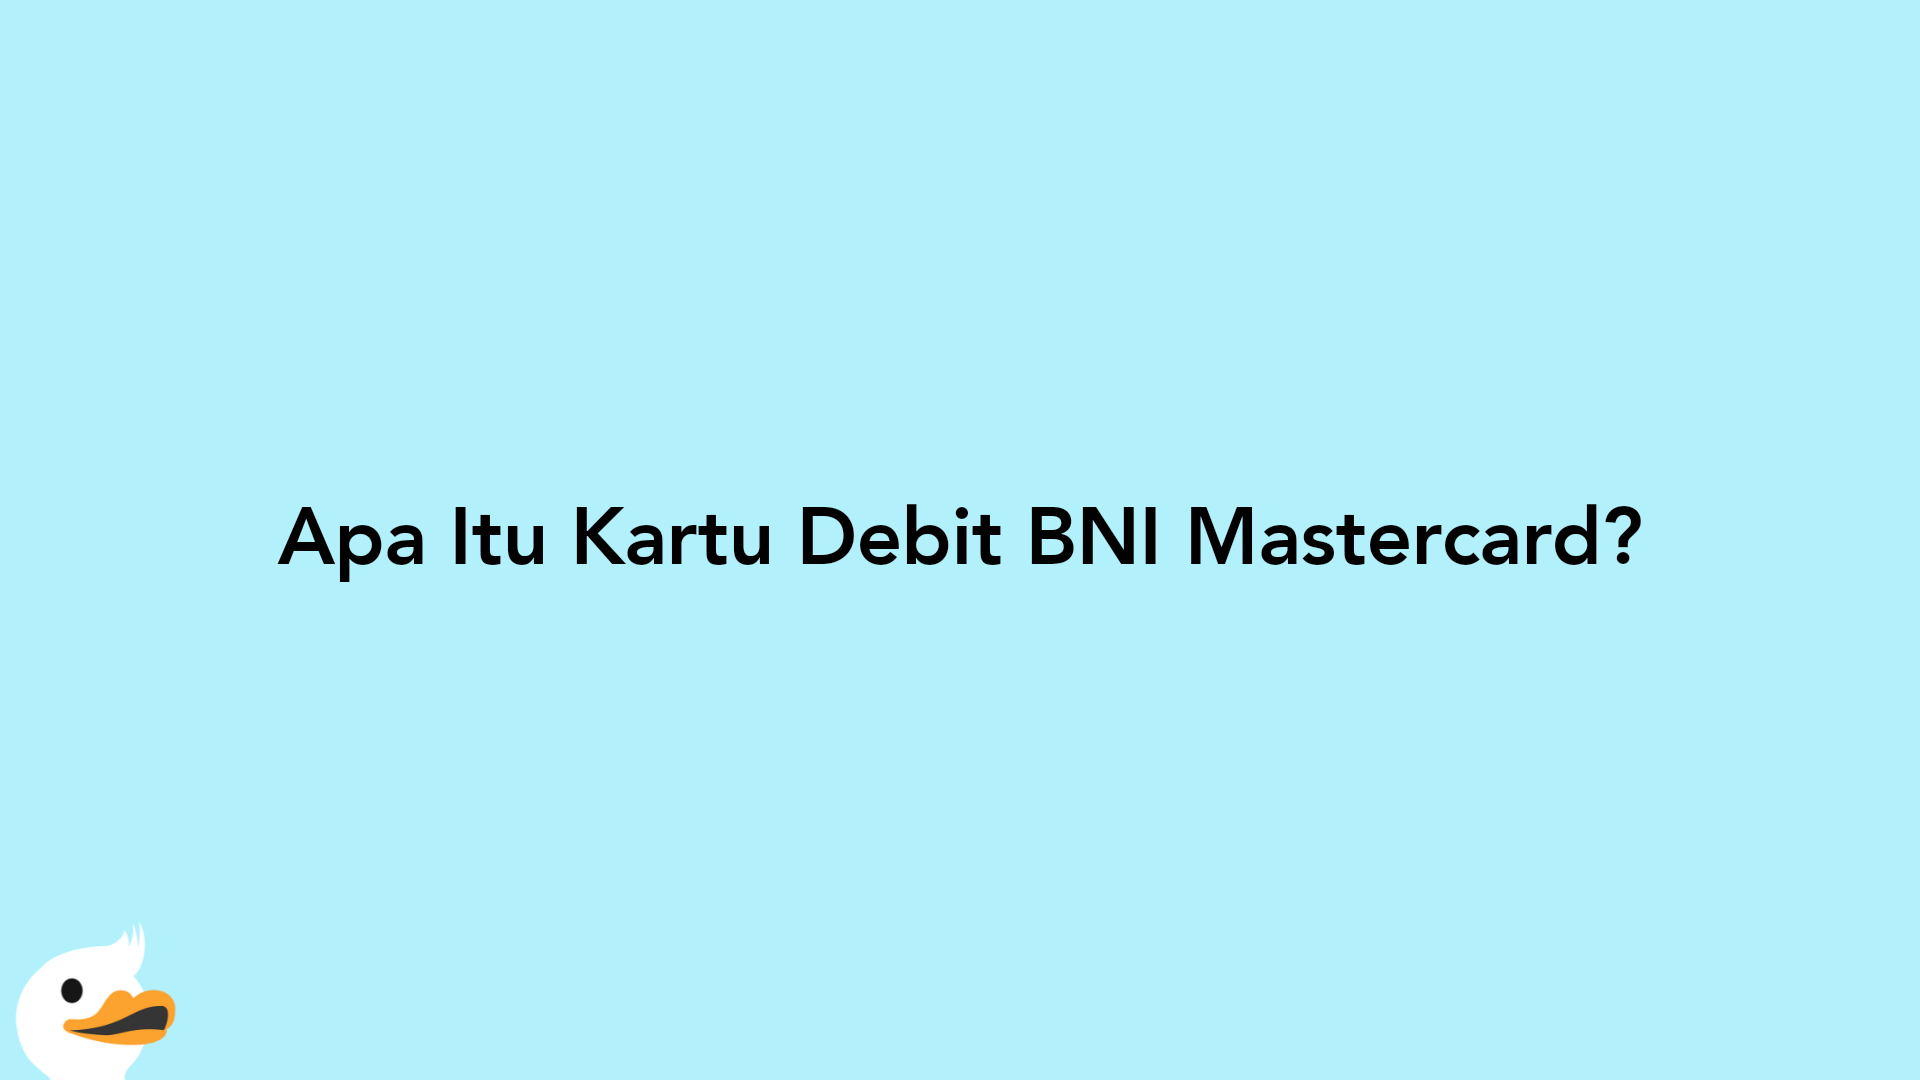 Apa Itu Kartu Debit BNI Mastercard?